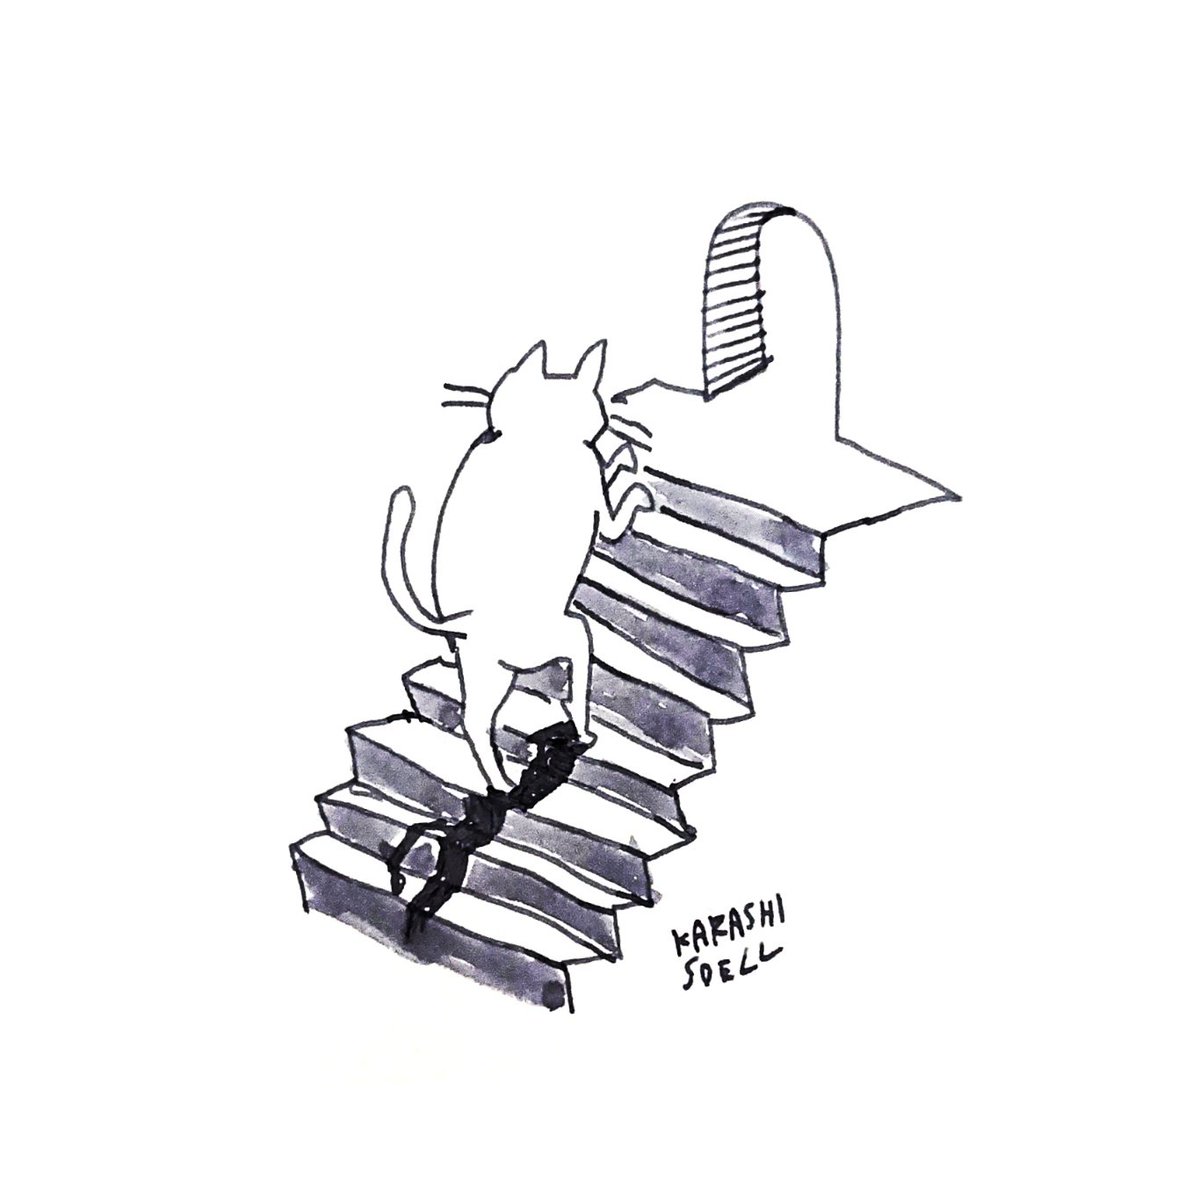 カラシソエル イラストレーター Twitterissa 今日のイラスト 階段をのぼる猫 今日のカラシイラスト